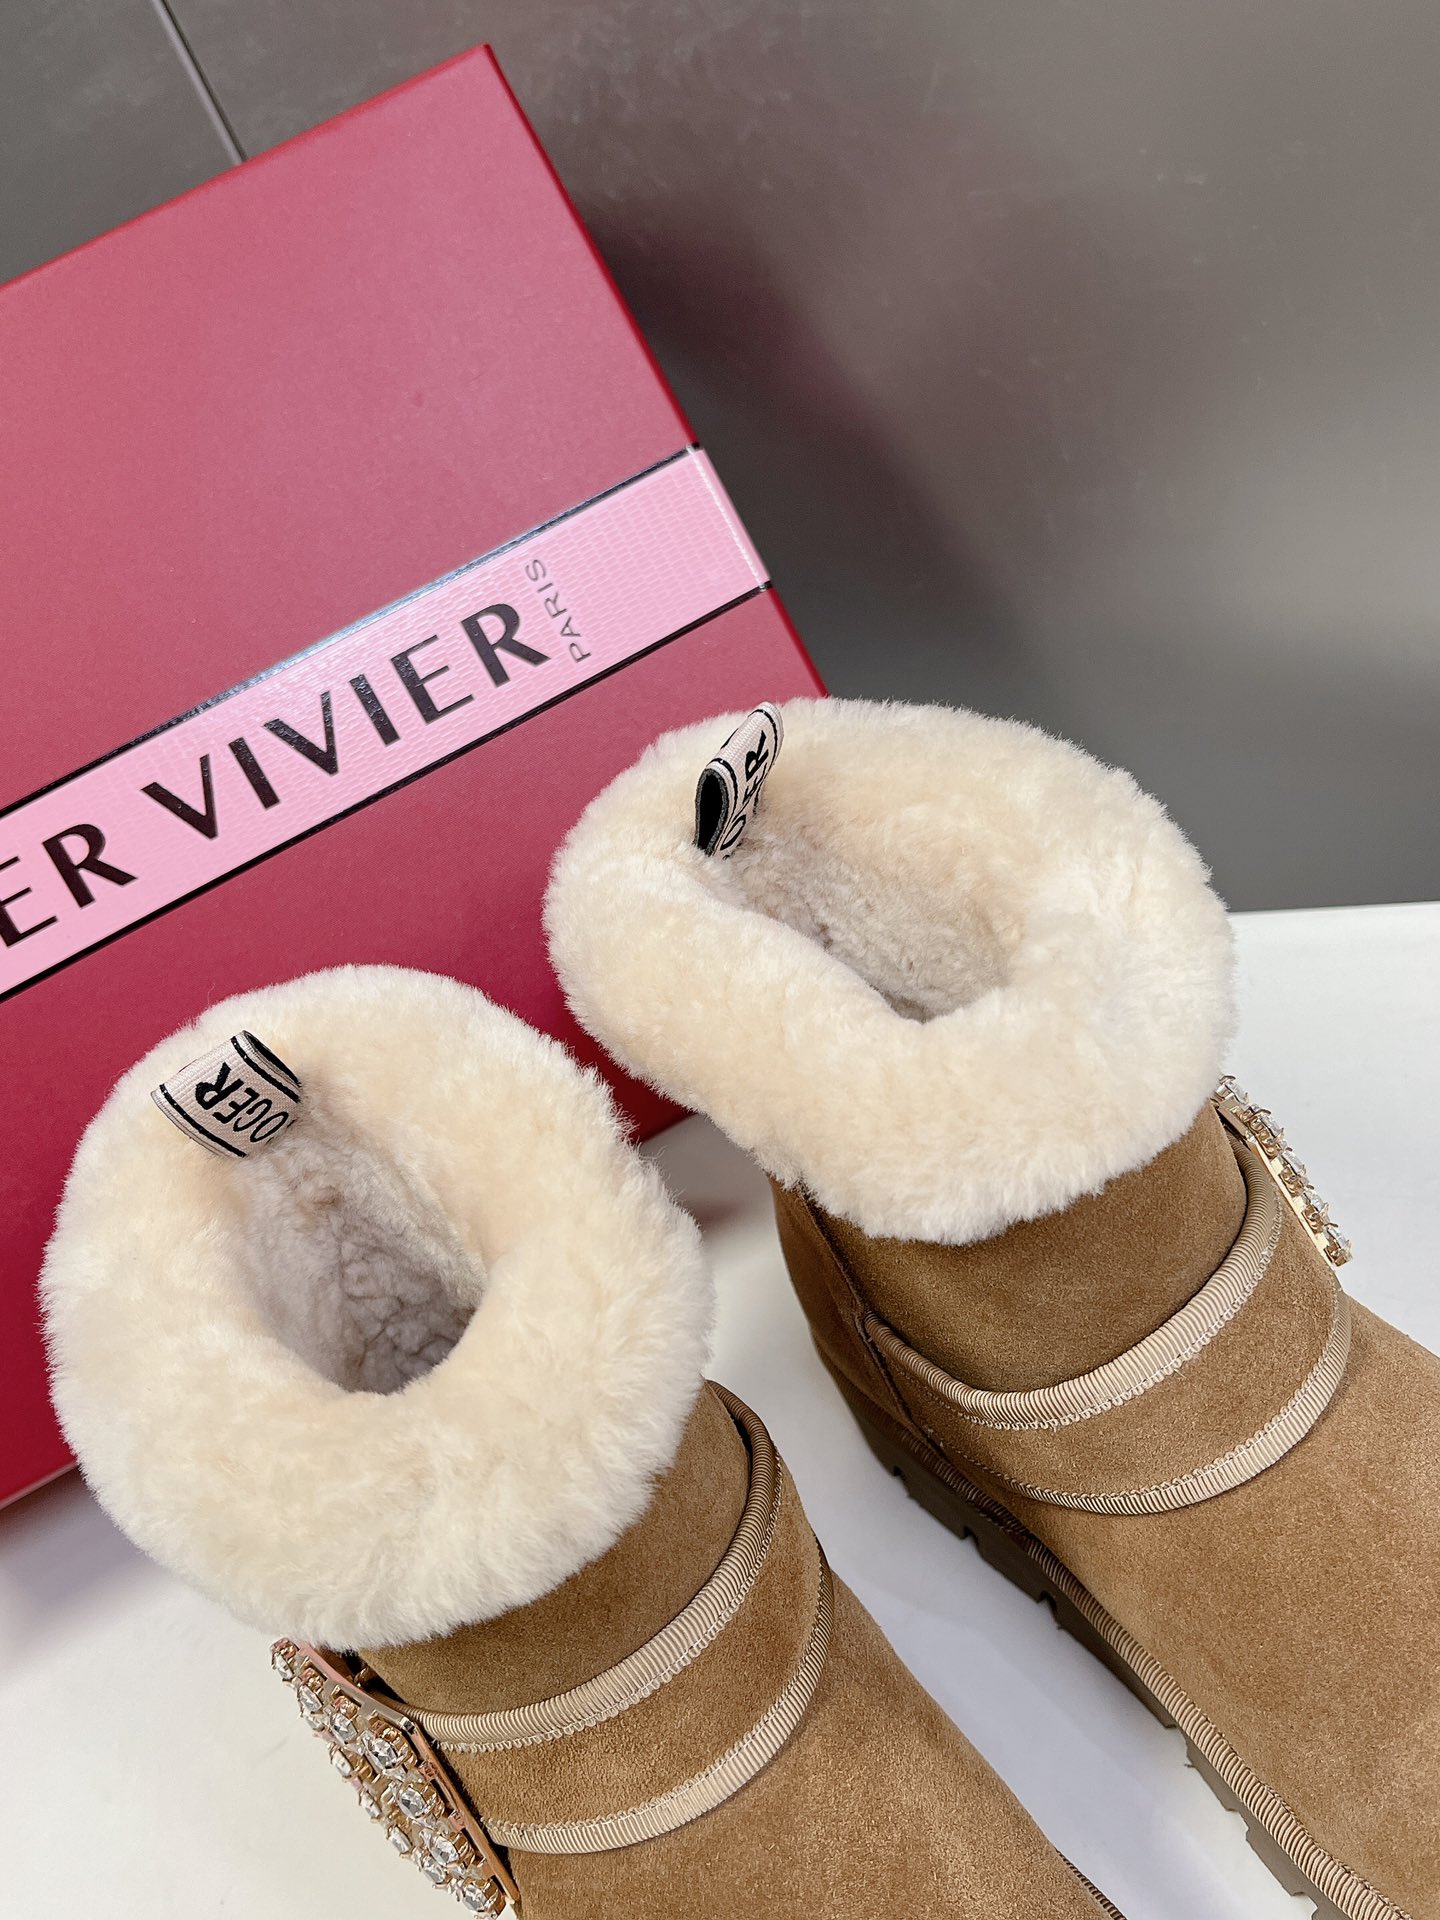 RogerVivier秒杀市场版本今年最美的雪地靴！太懂女人心思了侧钻扣的细节十分精致水晶方扣饰扣羊毛边